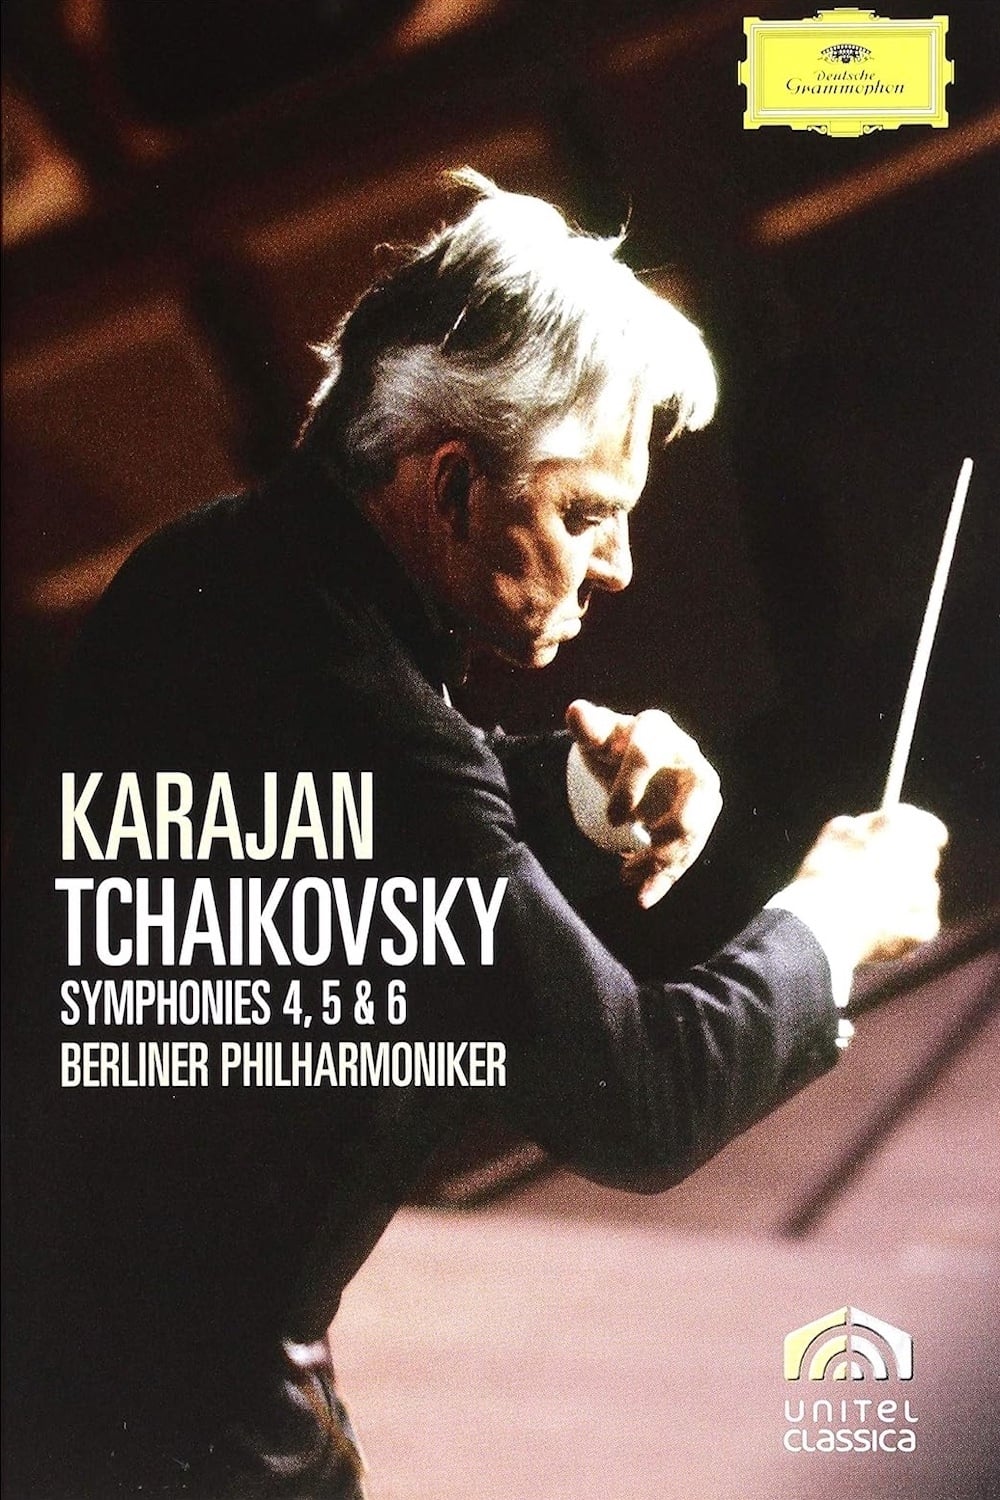 Karajan Tchaikovsky Symphonies 4, 5 & 6